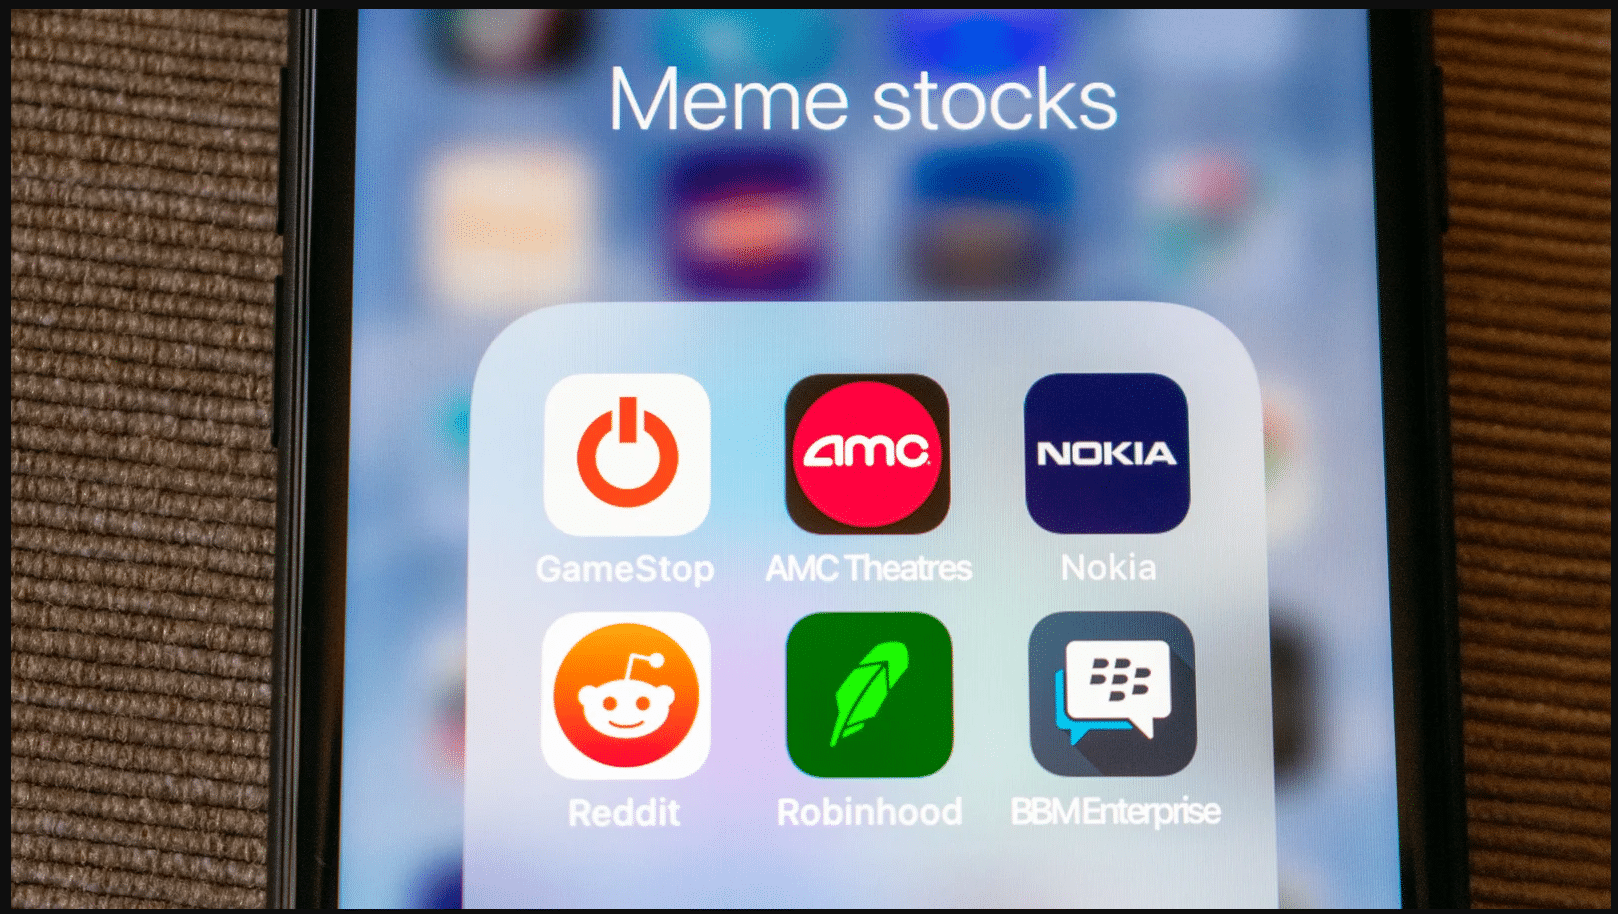 Sample meme stocks